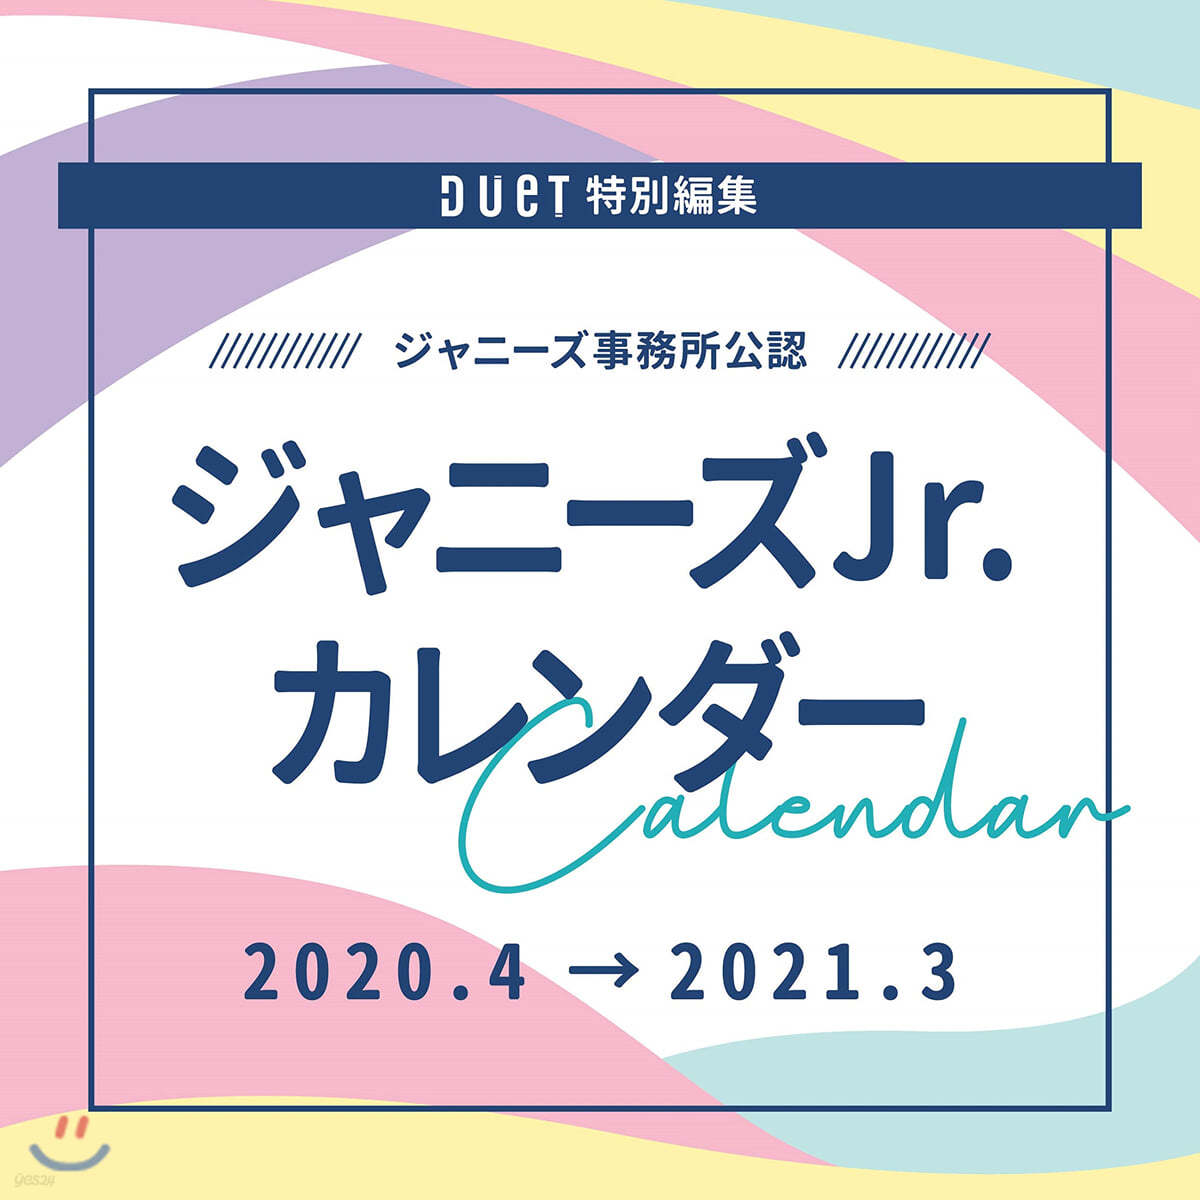 ジャニ-ズJr. カレンダ- 2020.4-2021.3